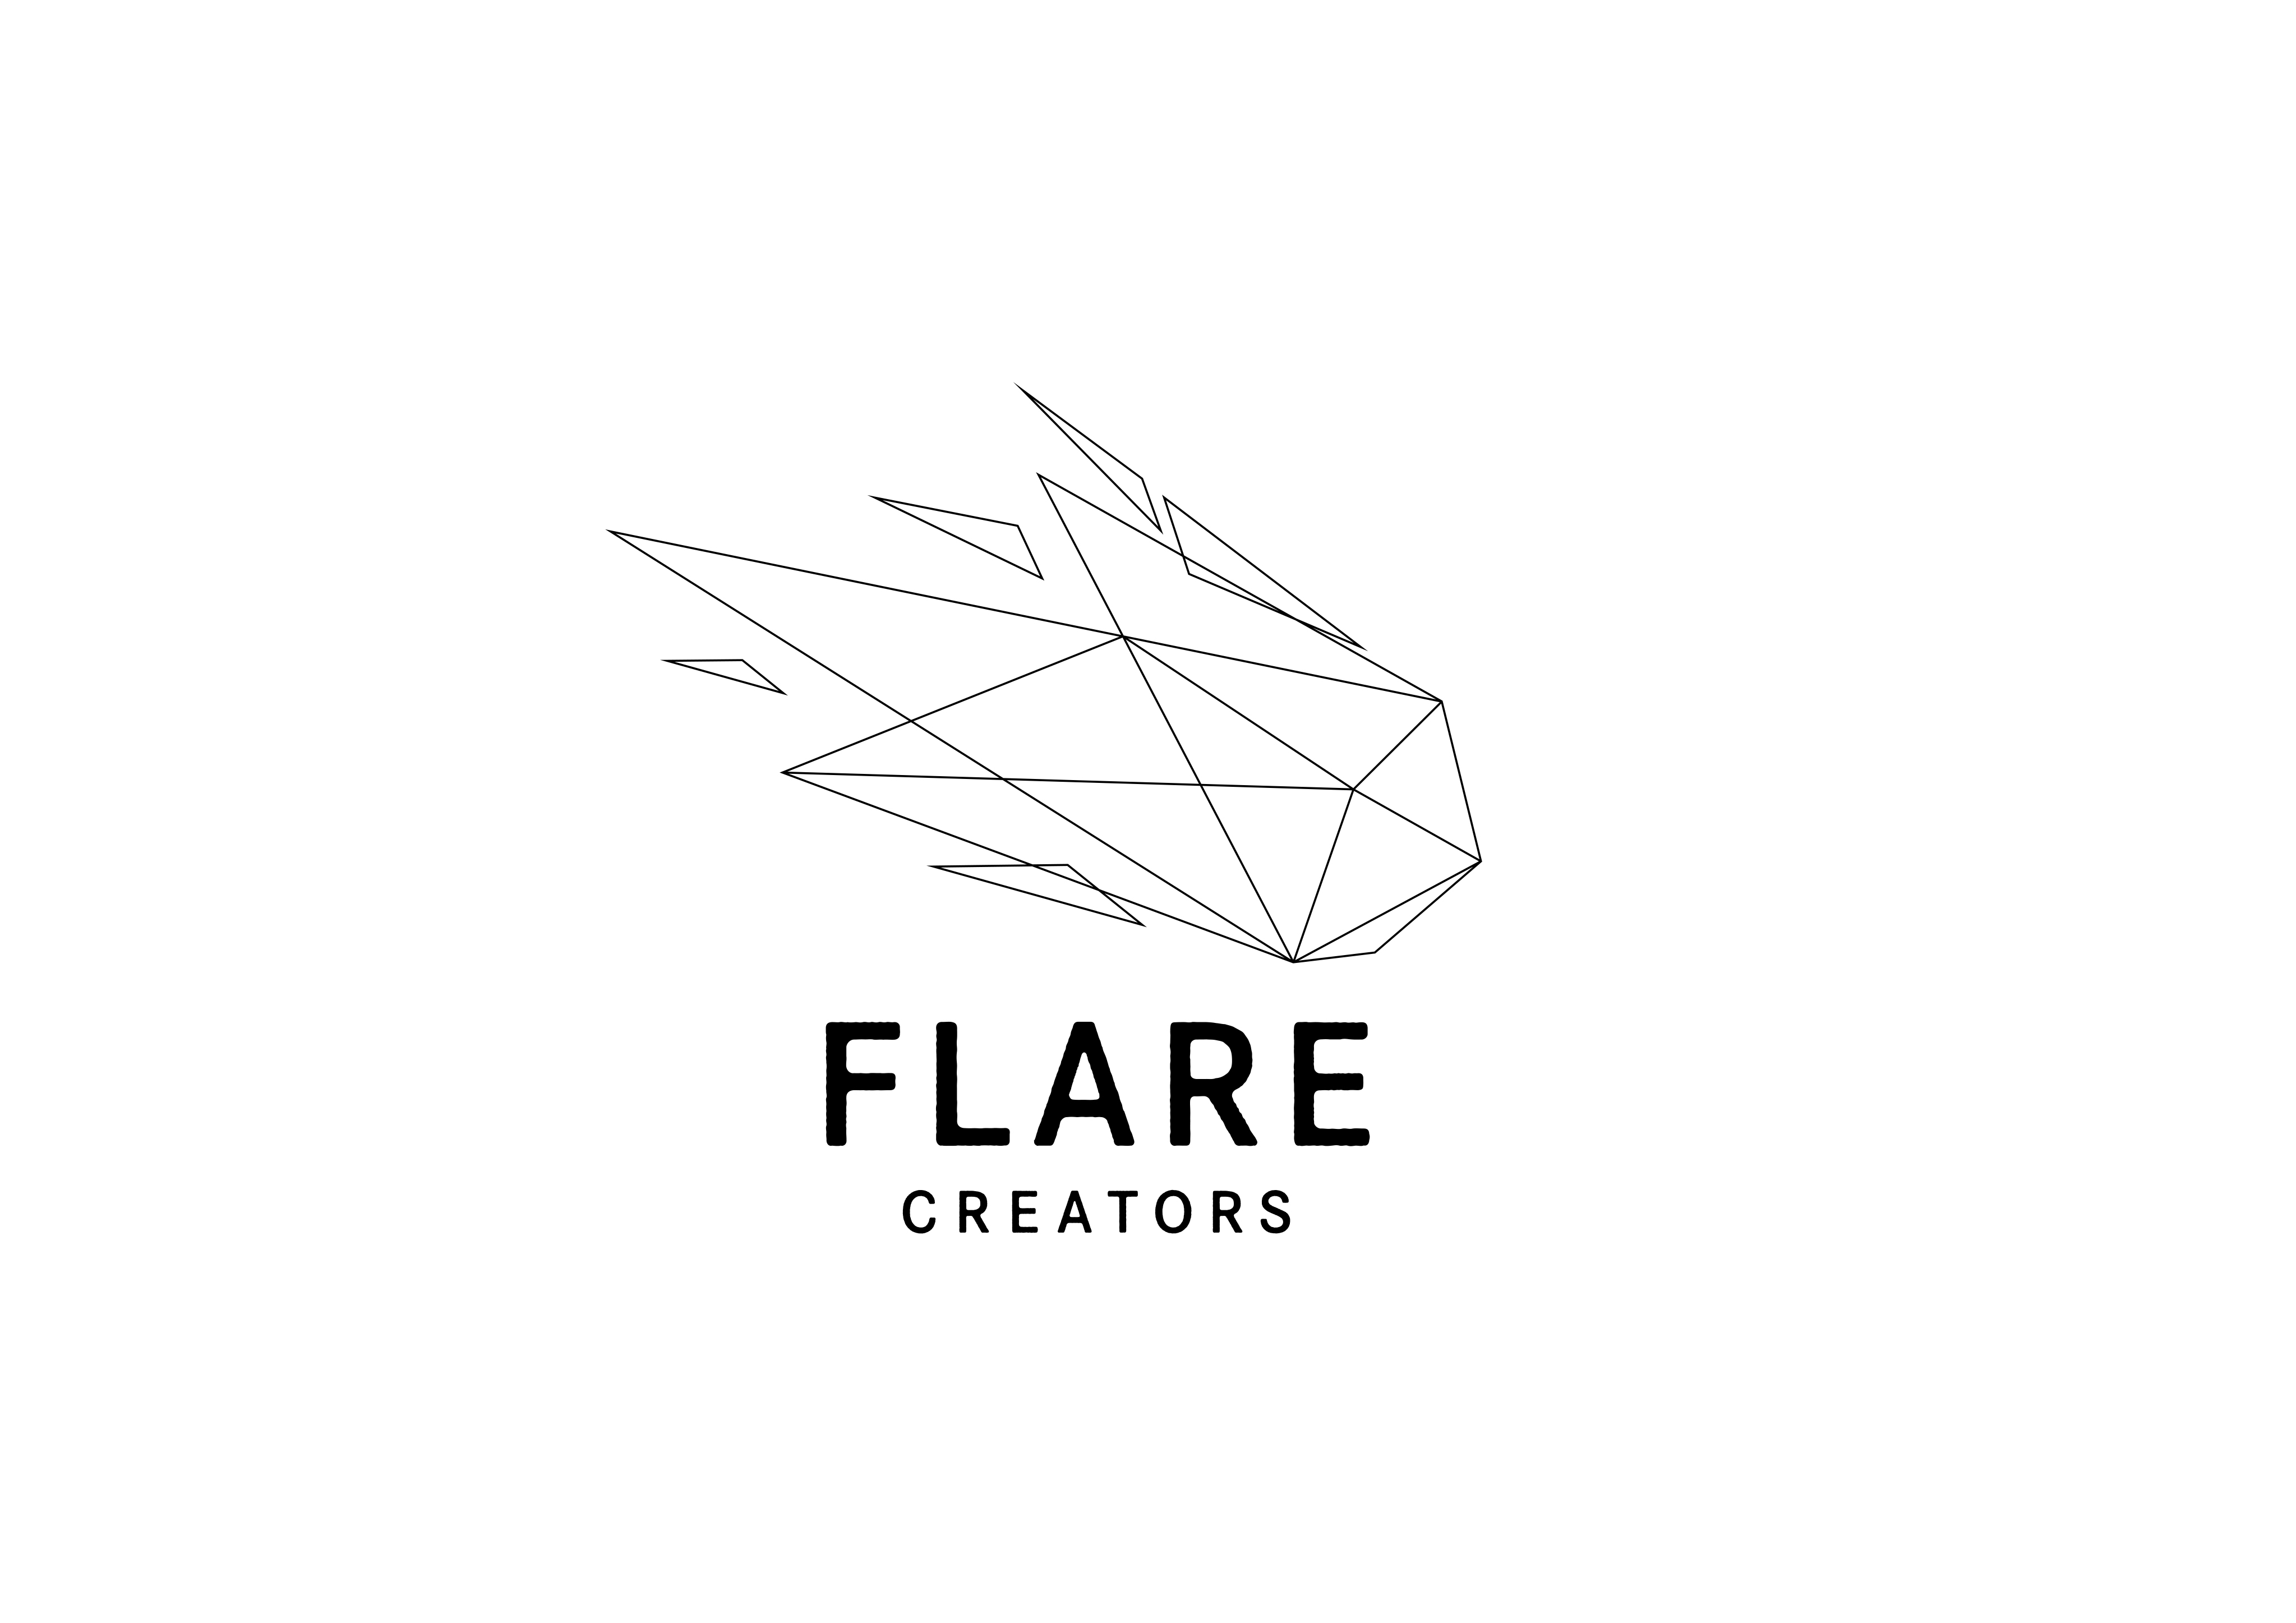 東映アニメーション・東映の企画力で世界市場を意識した
オリジナル映像企画等を開発・プロデュースする新会社
「株式会社FLARE CREATORS」を設立